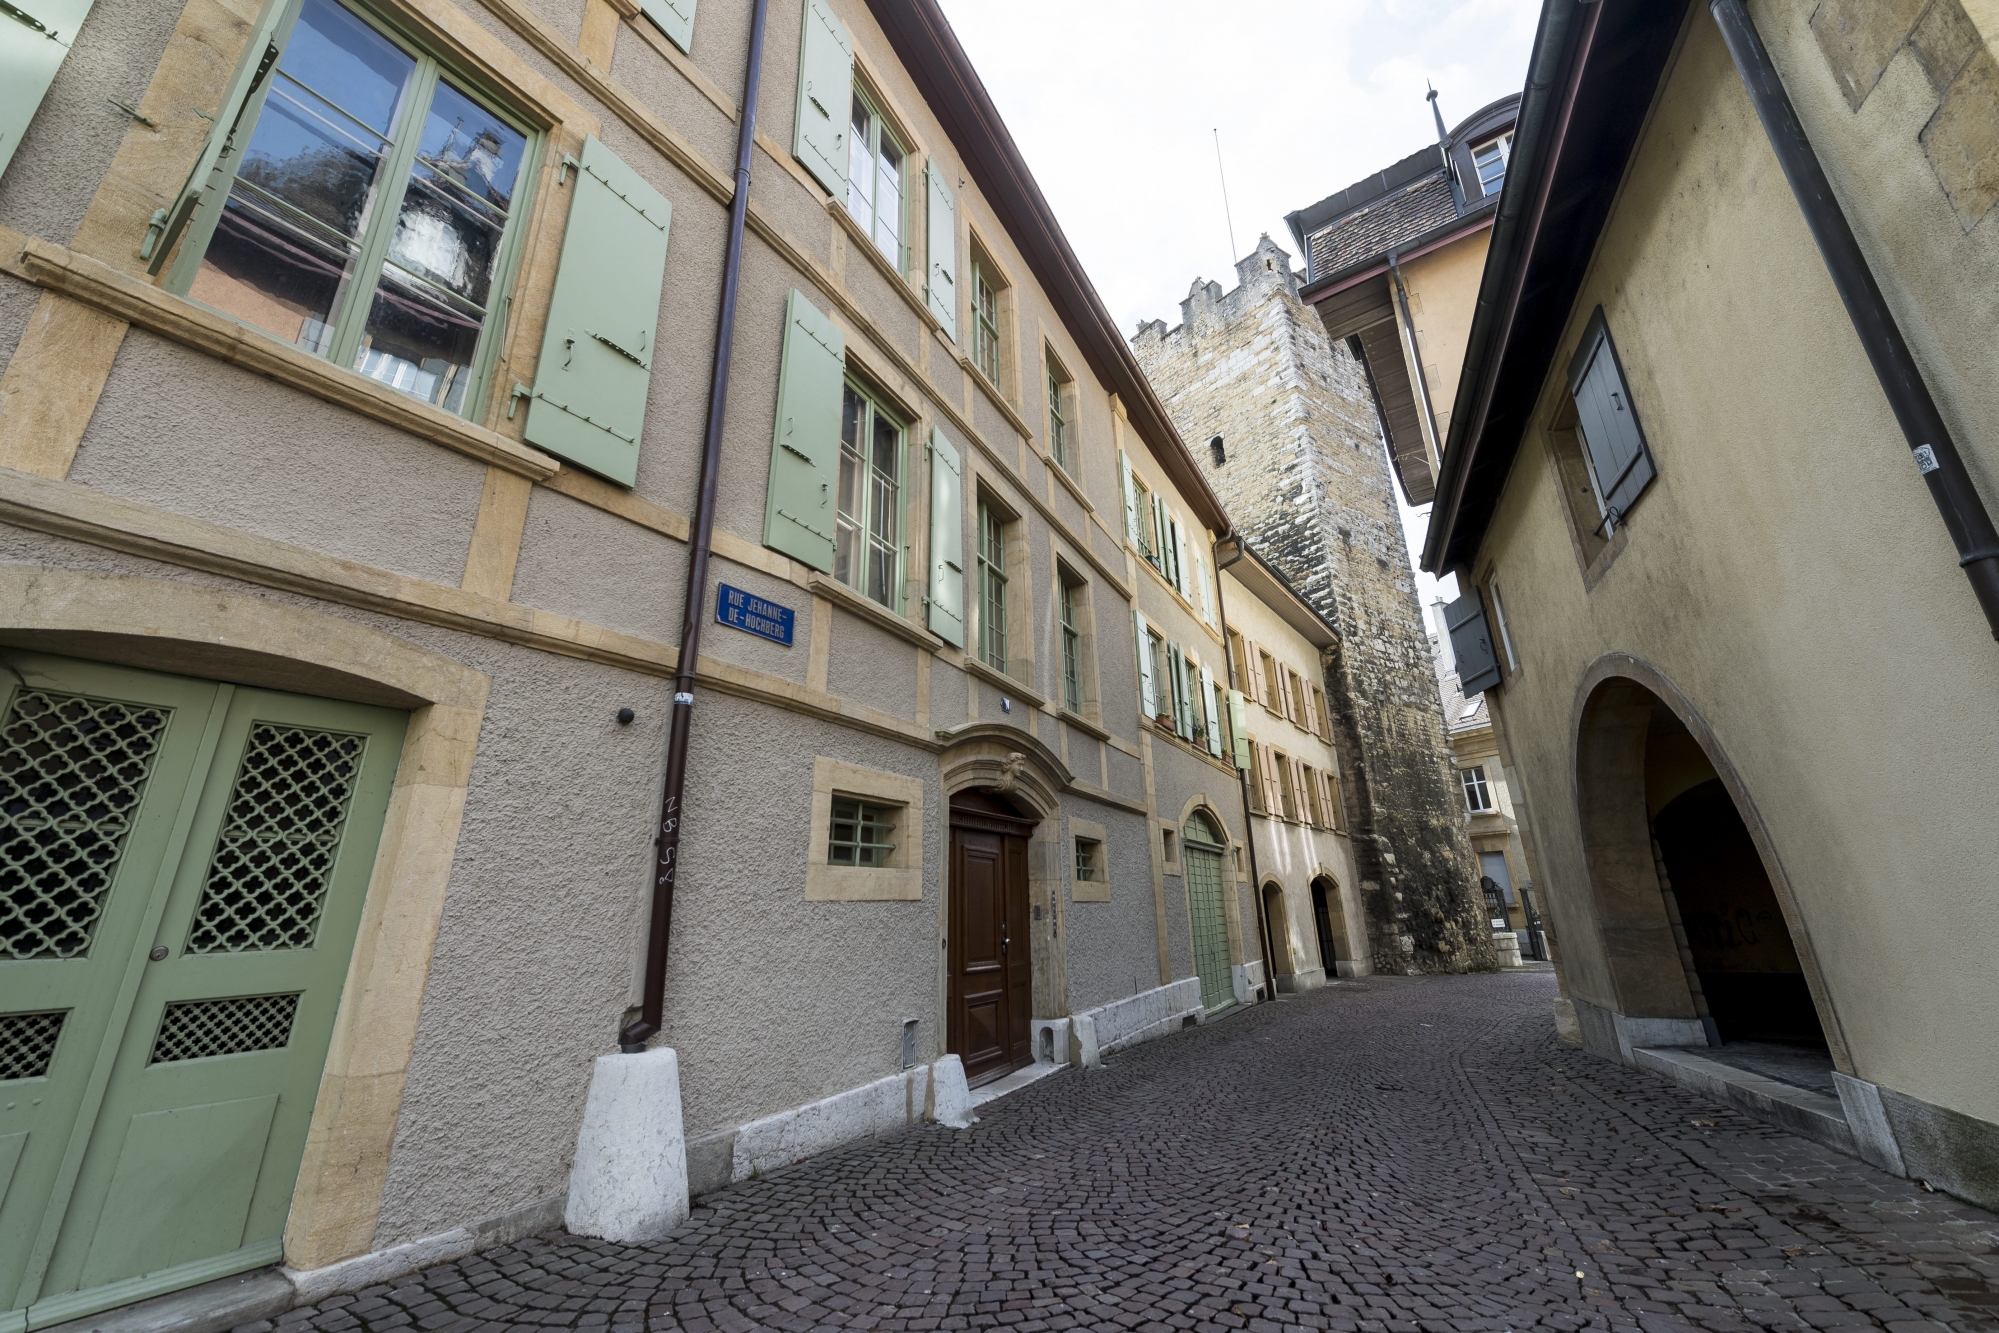 Le Nifff loue des locaux à la rue Jehanne-de-Hochberg 3, dans le bâtiment accolé à la Tour des prisons.